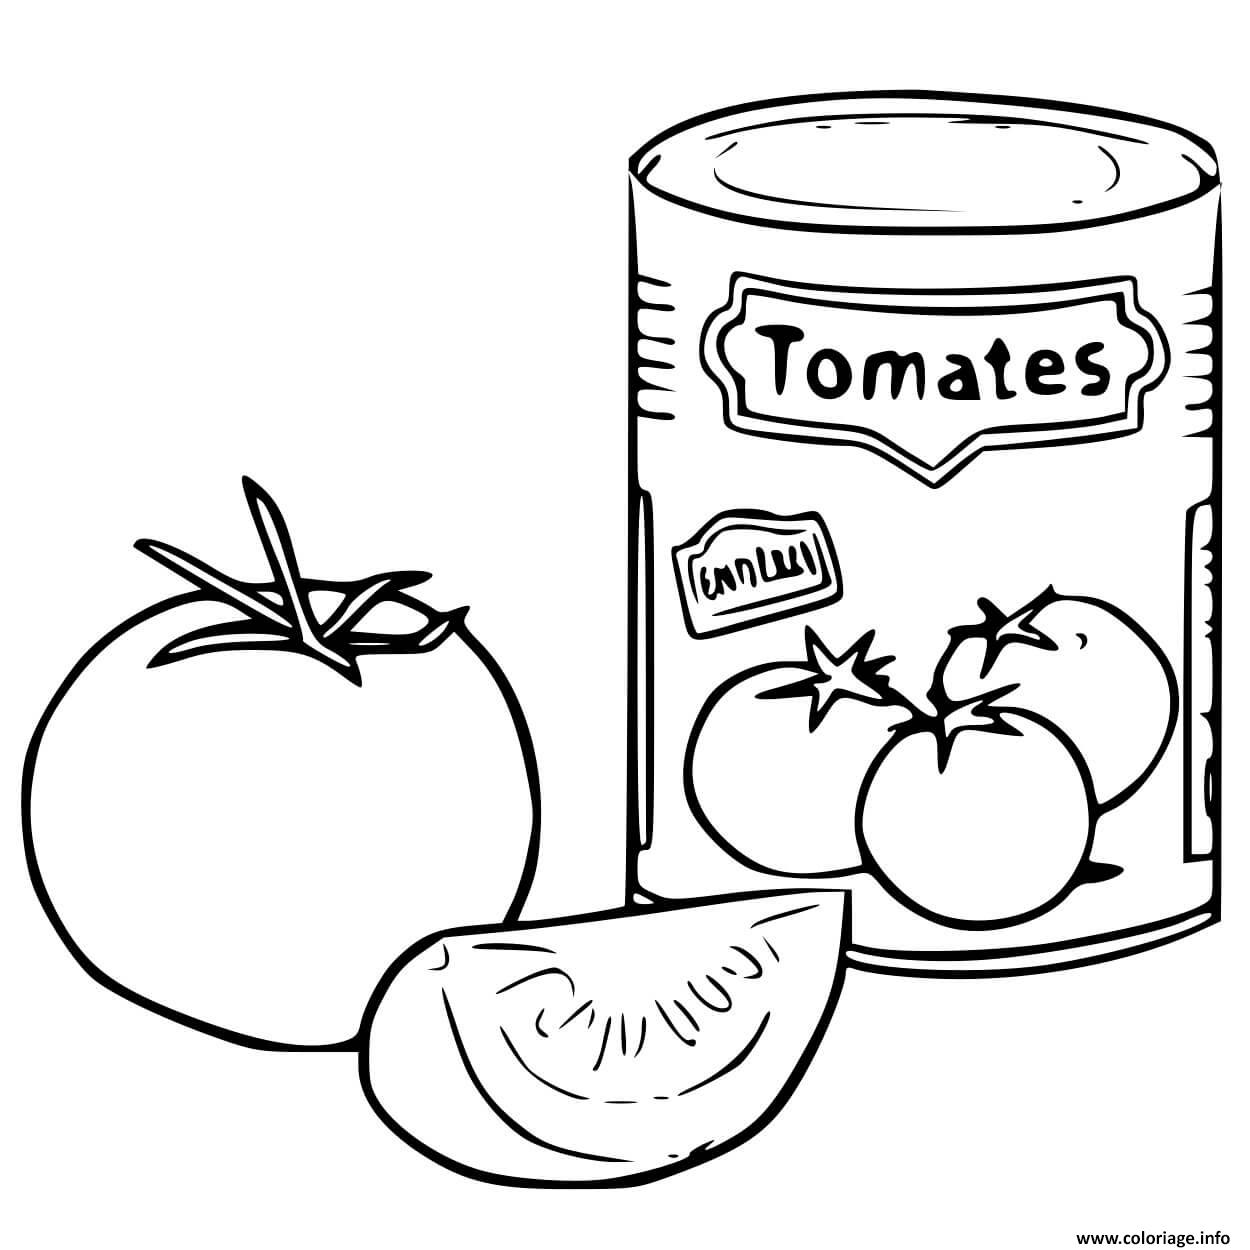 Dessin canne de tomate broye Coloriage Gratuit à Imprimer